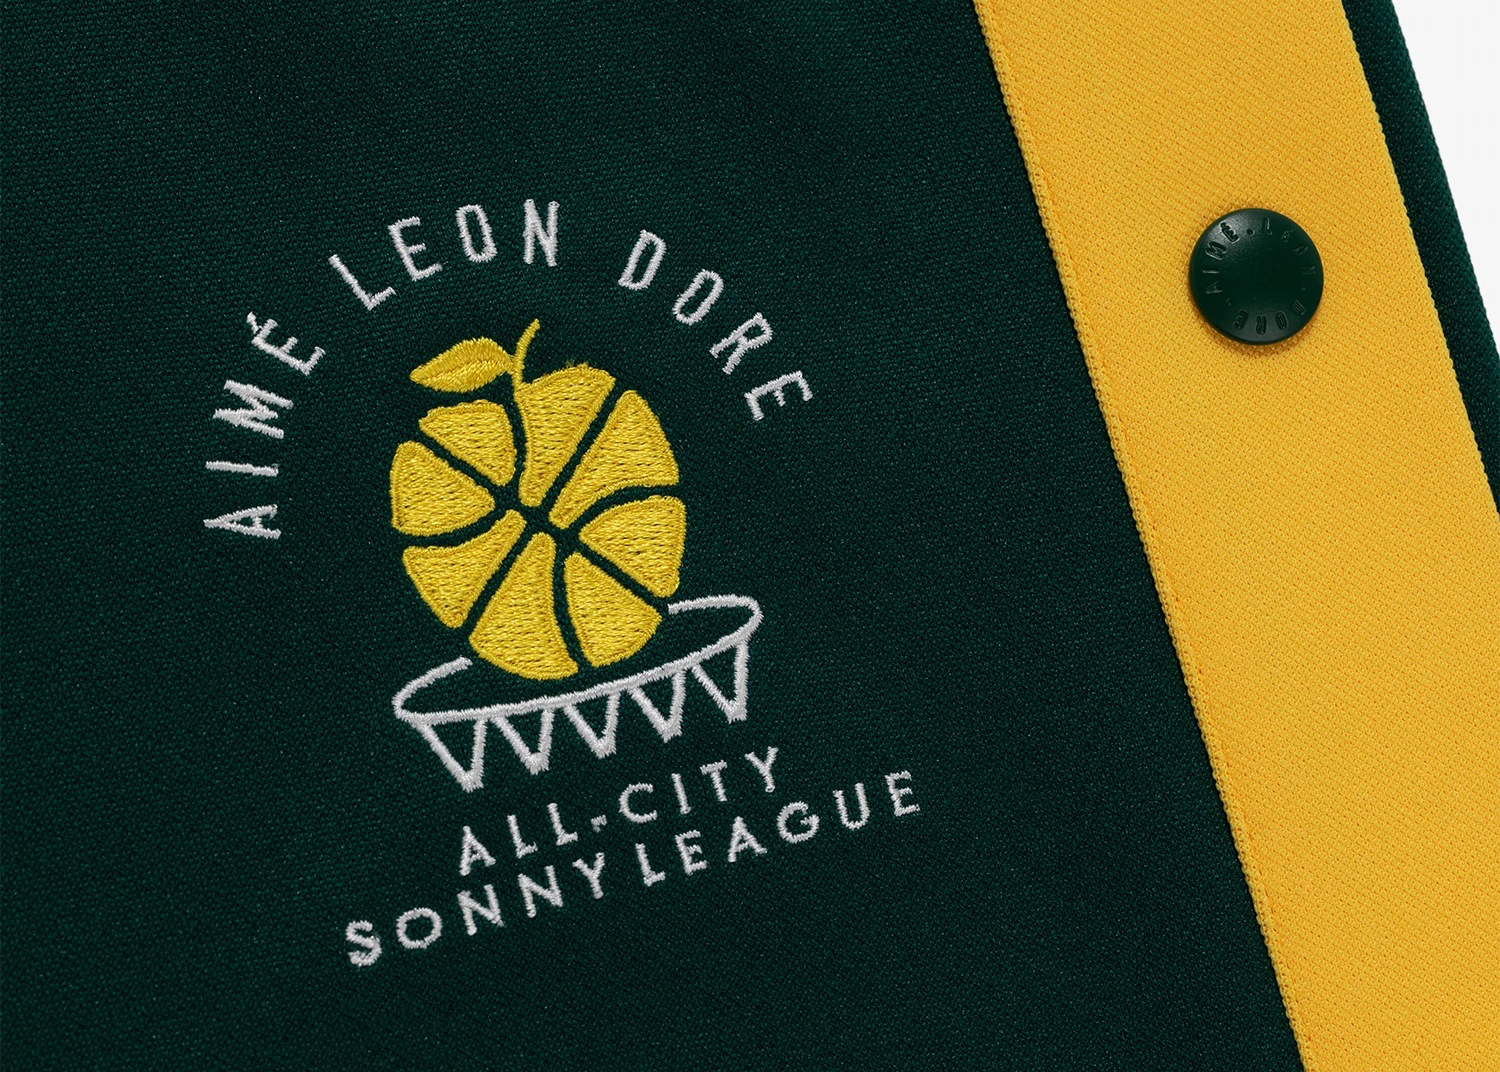 Aime Leon Dore x New Balance SONNY League Warm Up Pant Green Men's 